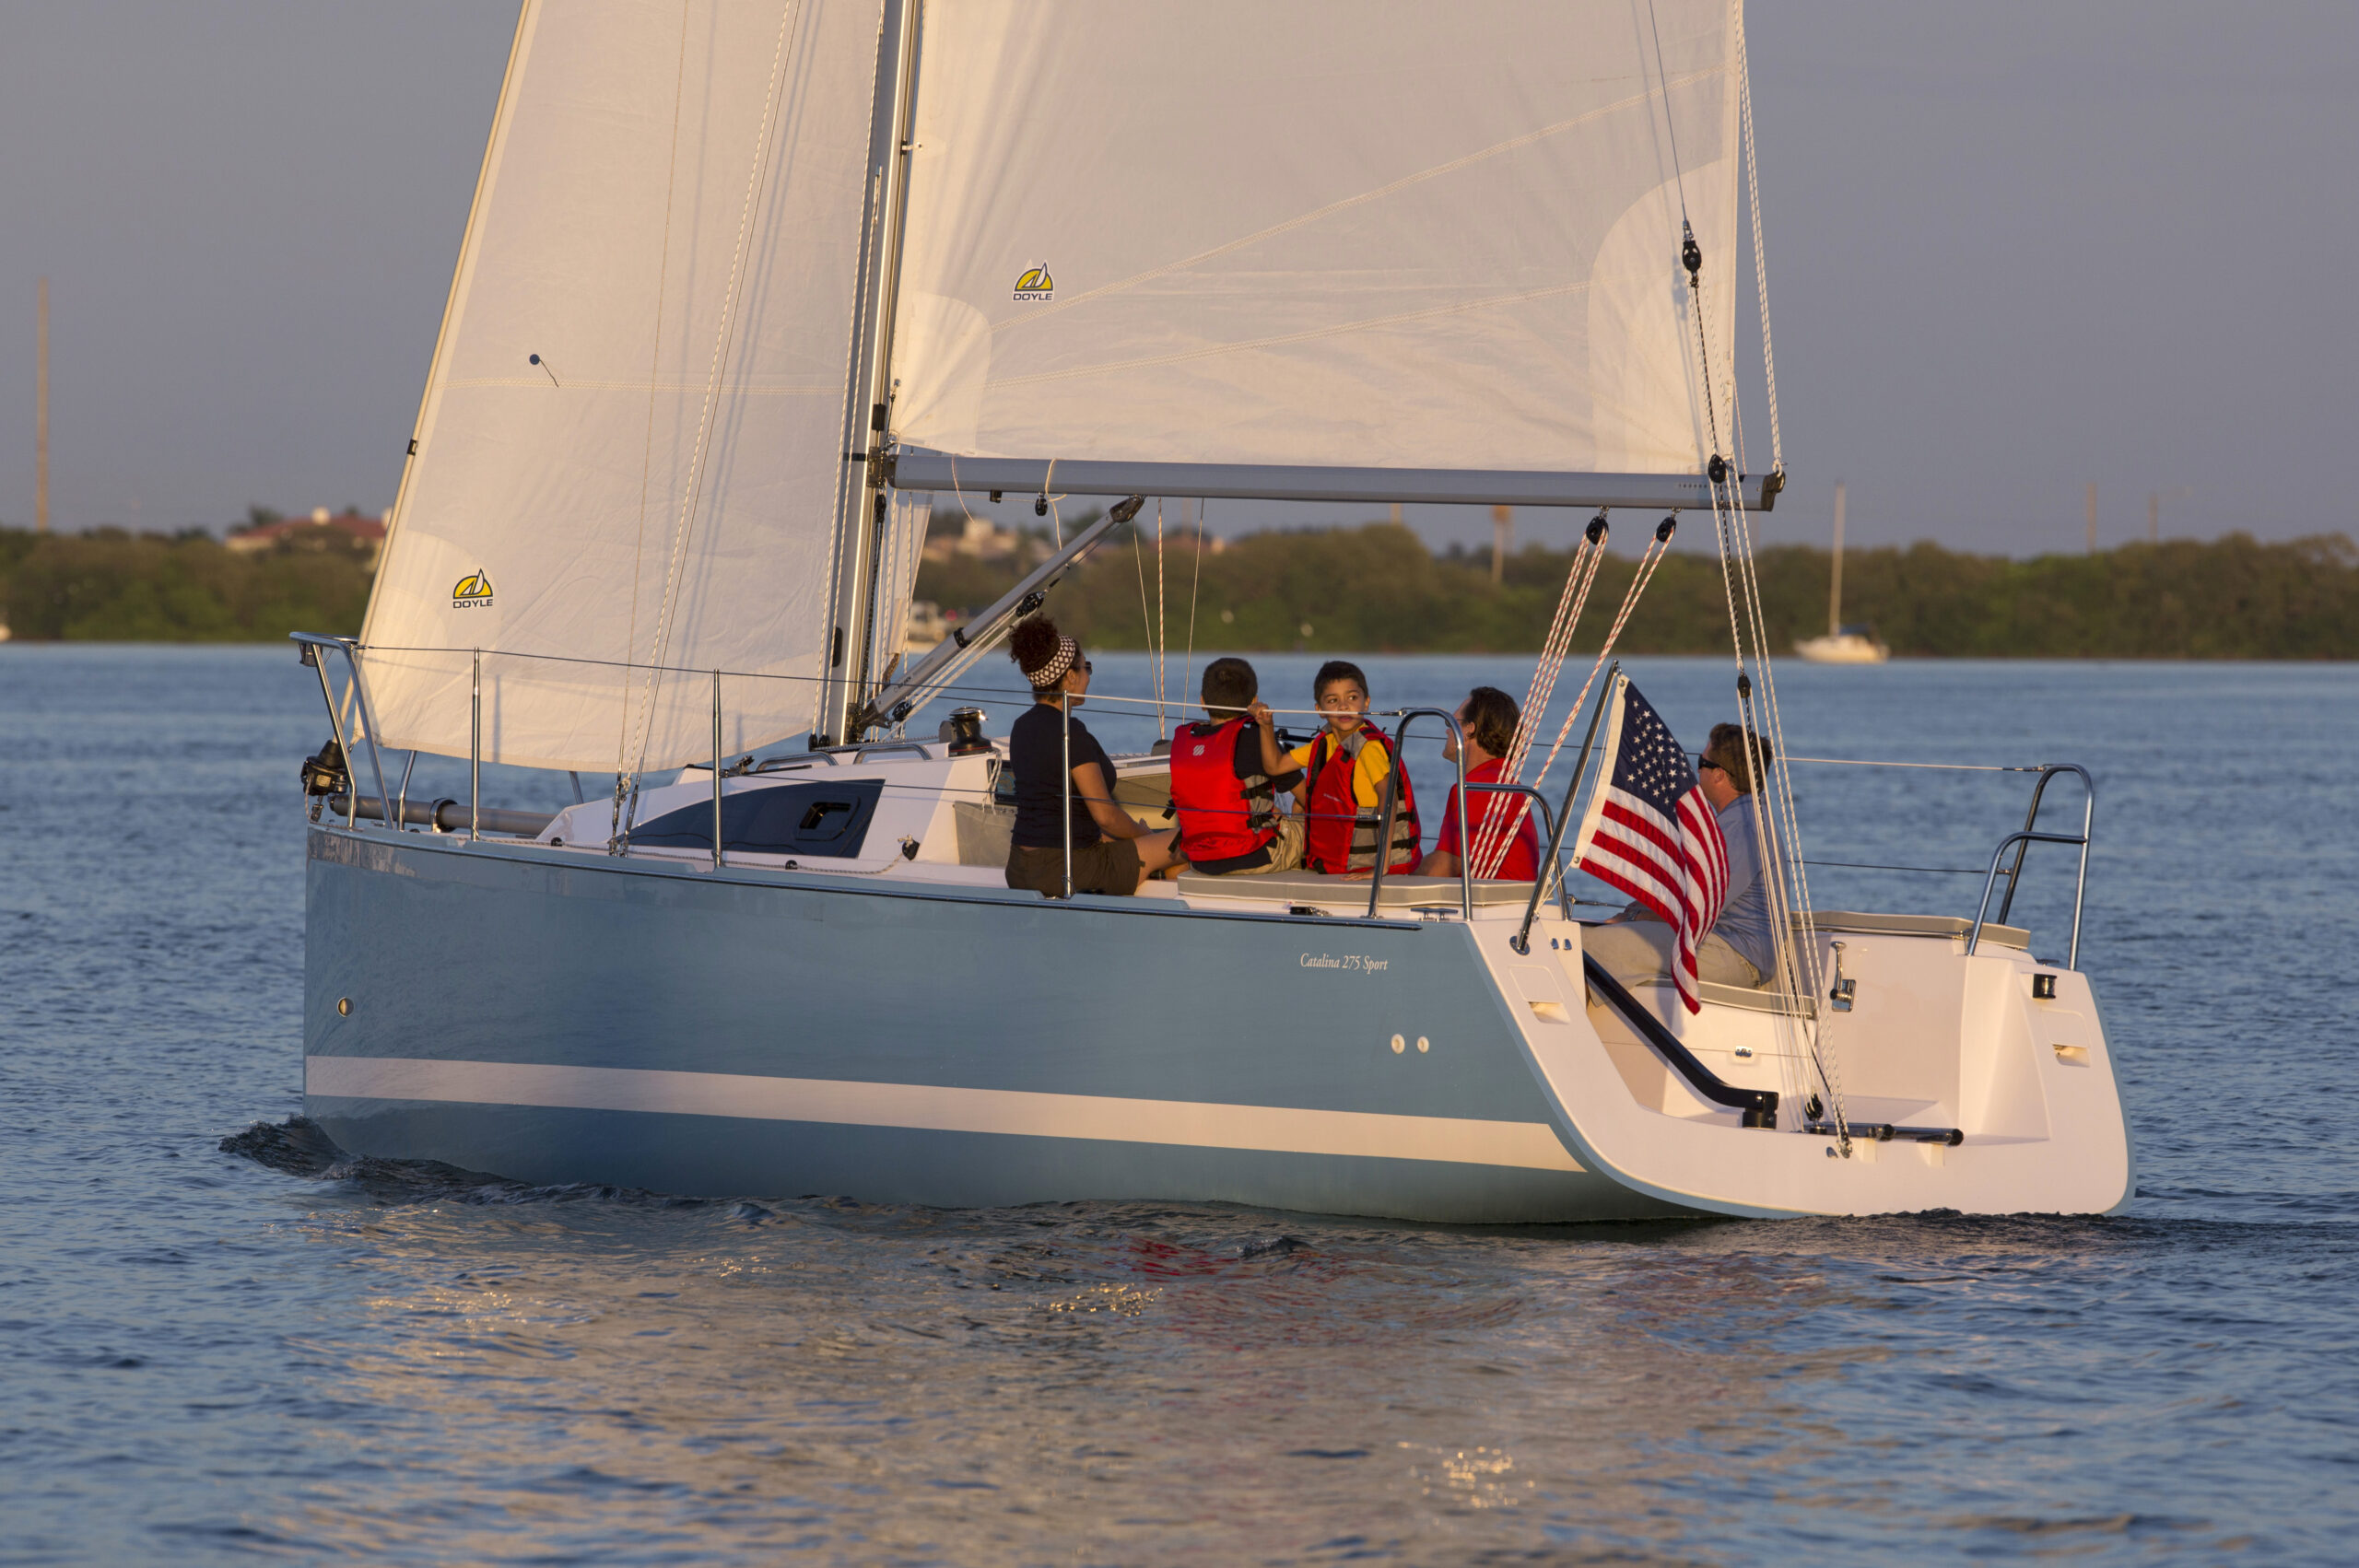 Catalina 275 Sport sailing in St. Pete, FL.